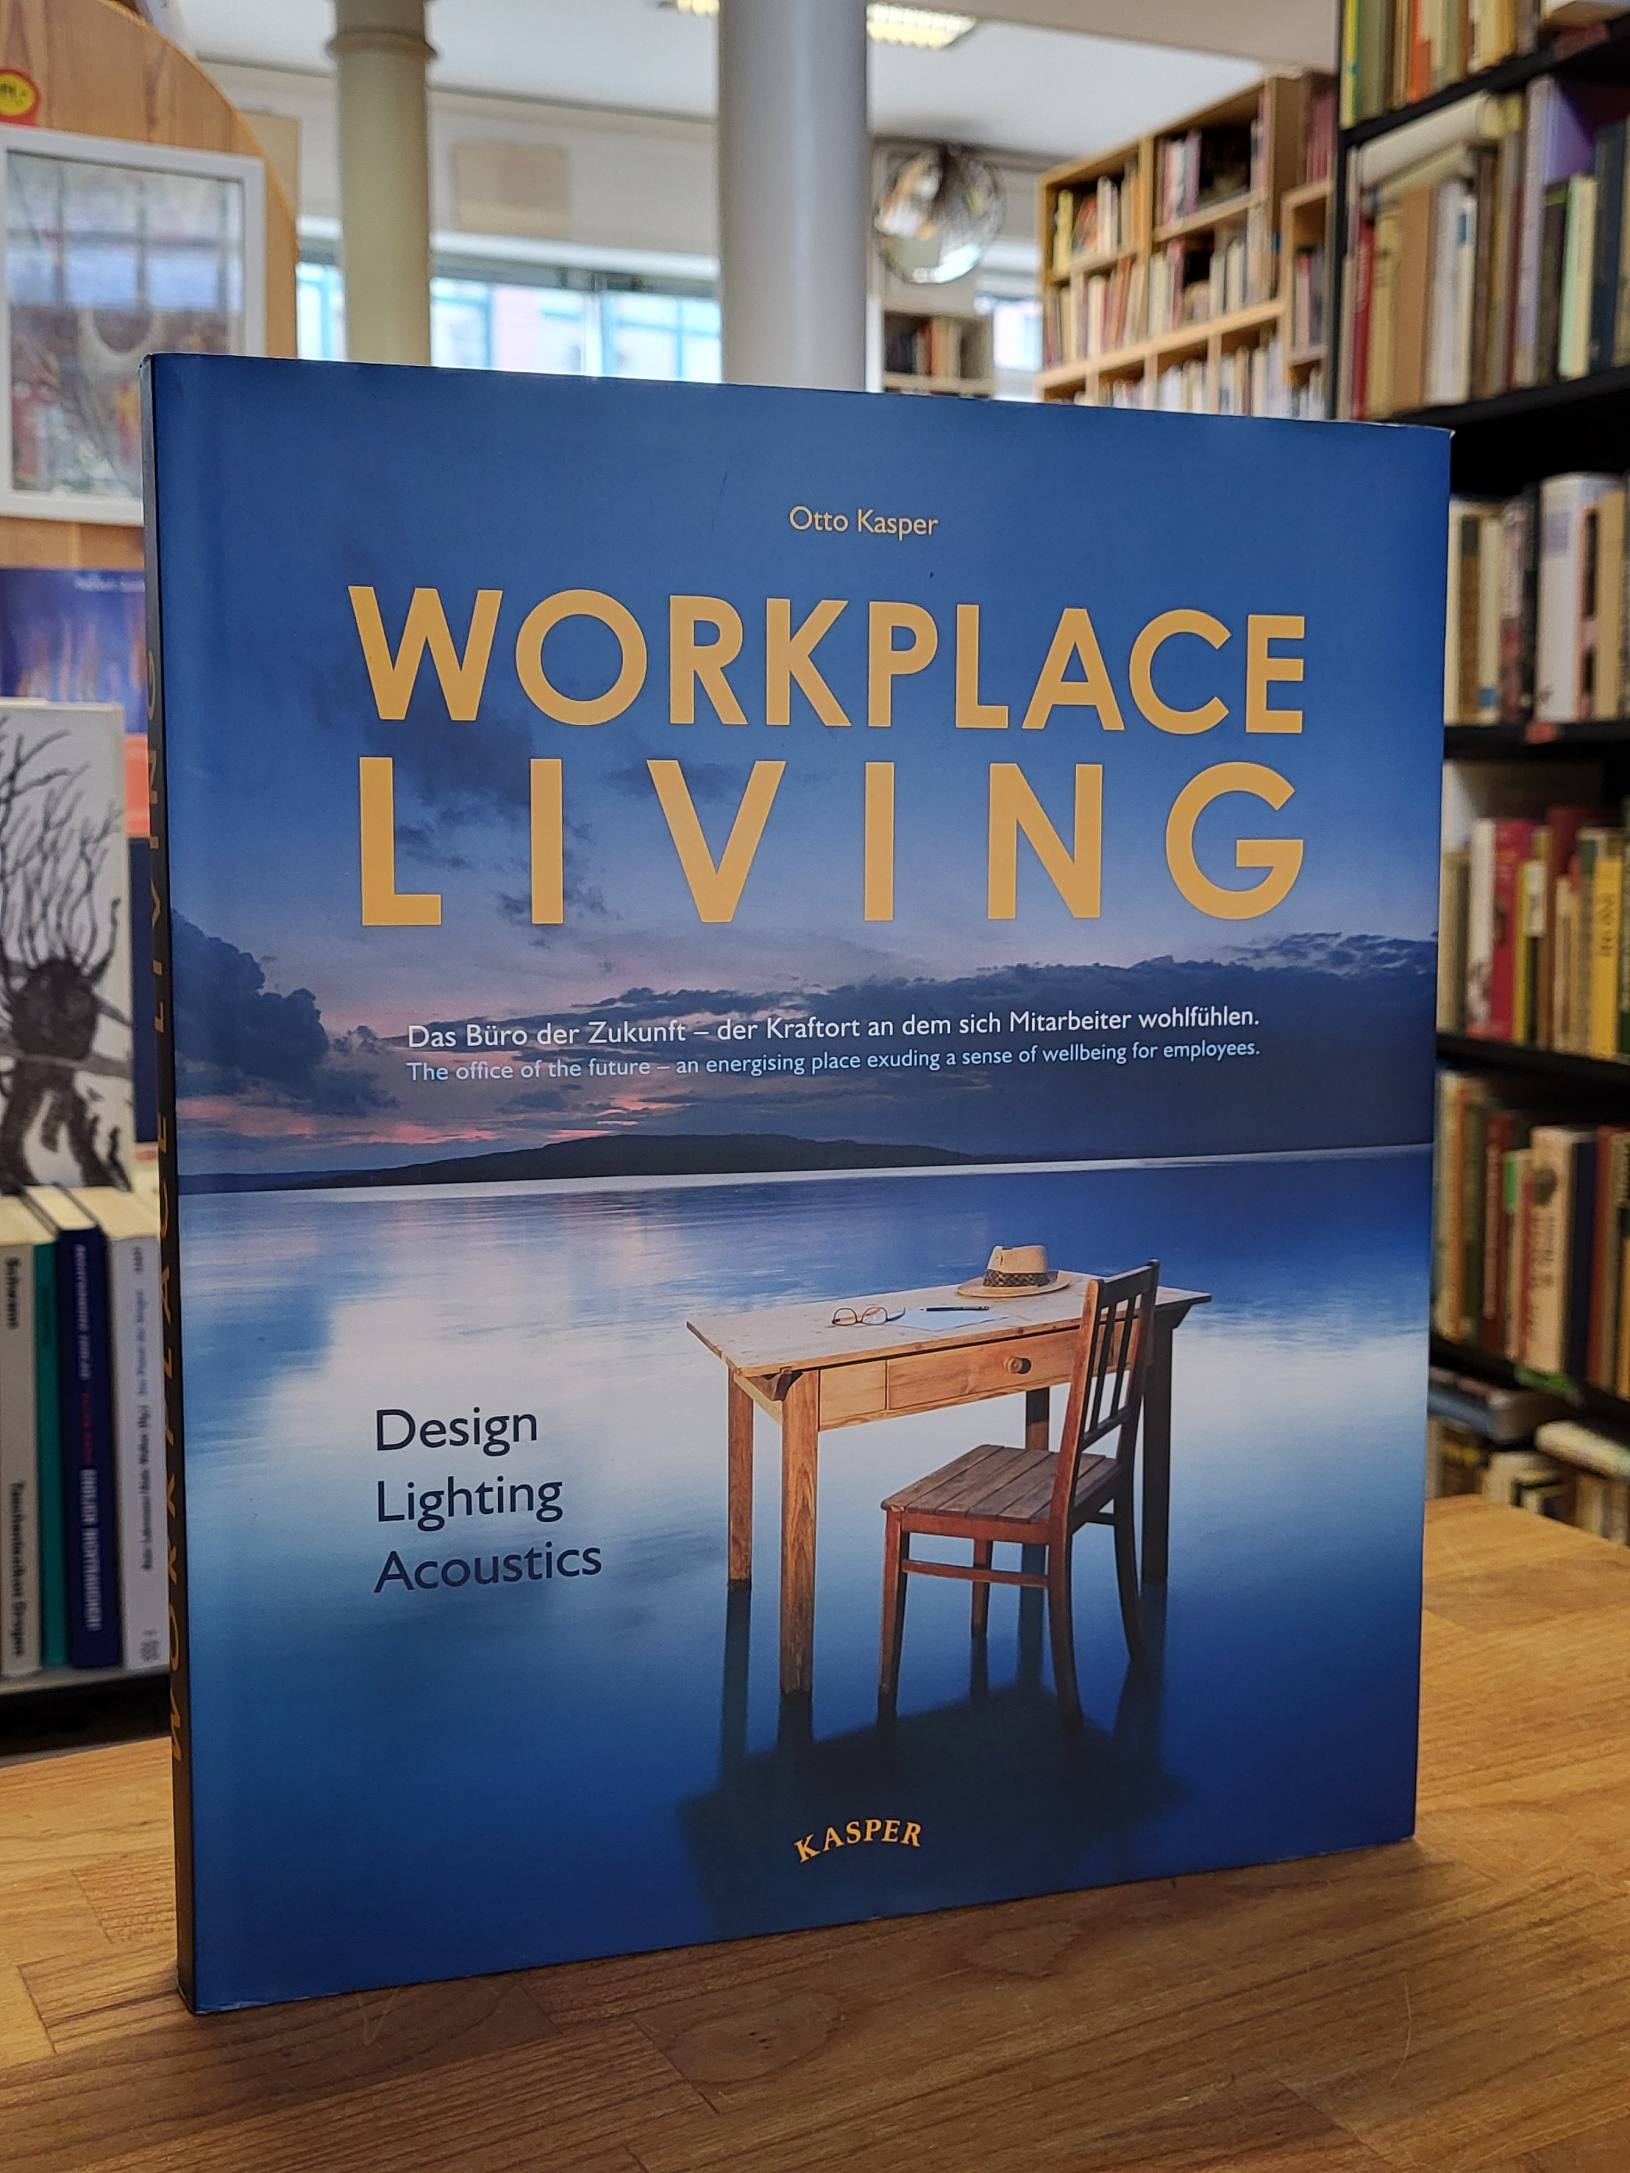 Kasper, Workplace Living – Design, Lighting, Acoustics, (Zusatztitel auf dem Vor